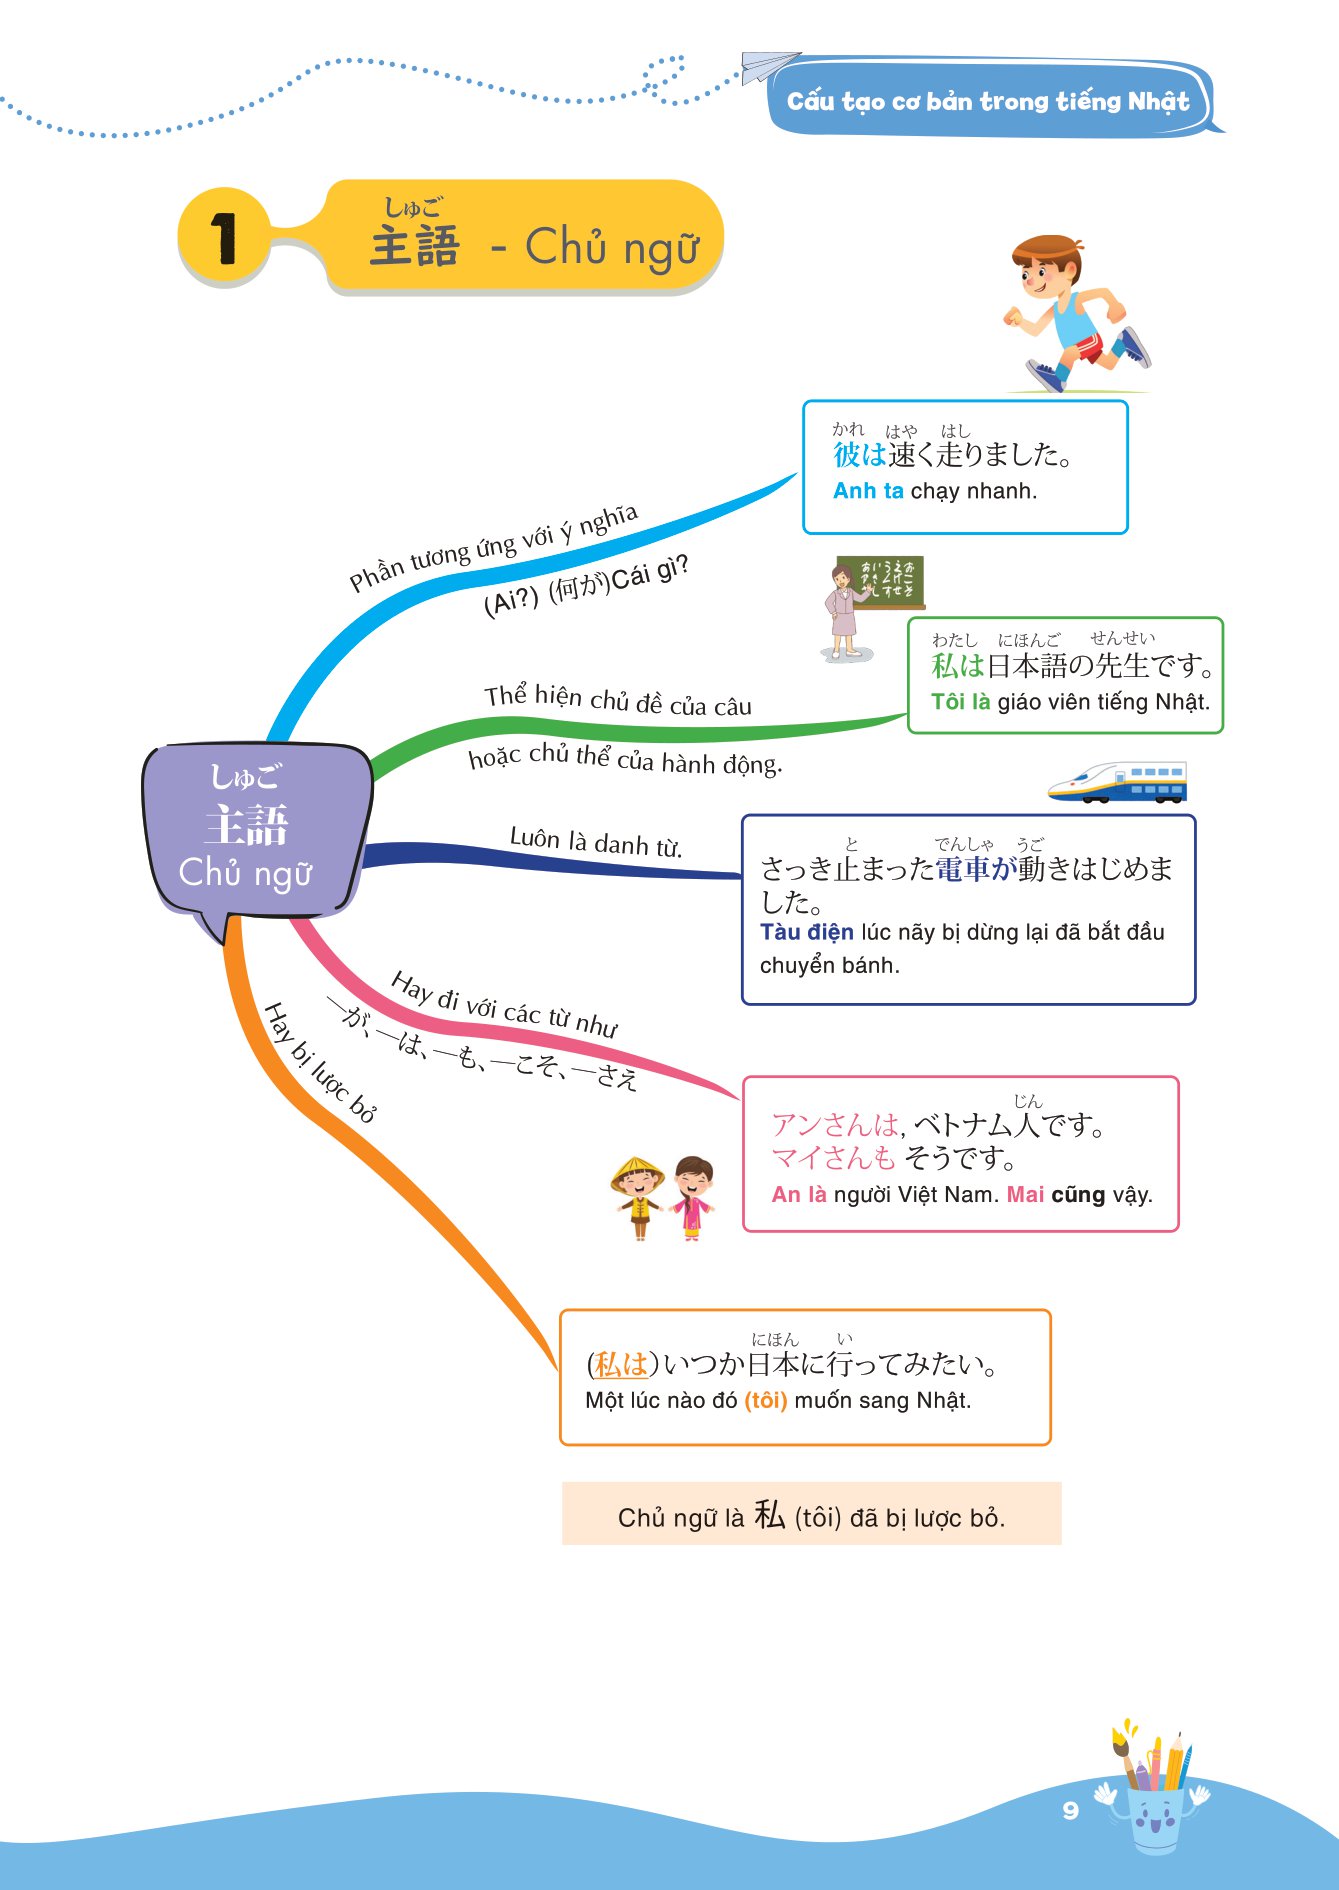 Mind Map Ngữ Pháp Tiếng Nhật - Học Ngữ Pháp Tiếng Nhật Qua Sơ Đồ Tư Duy_MC